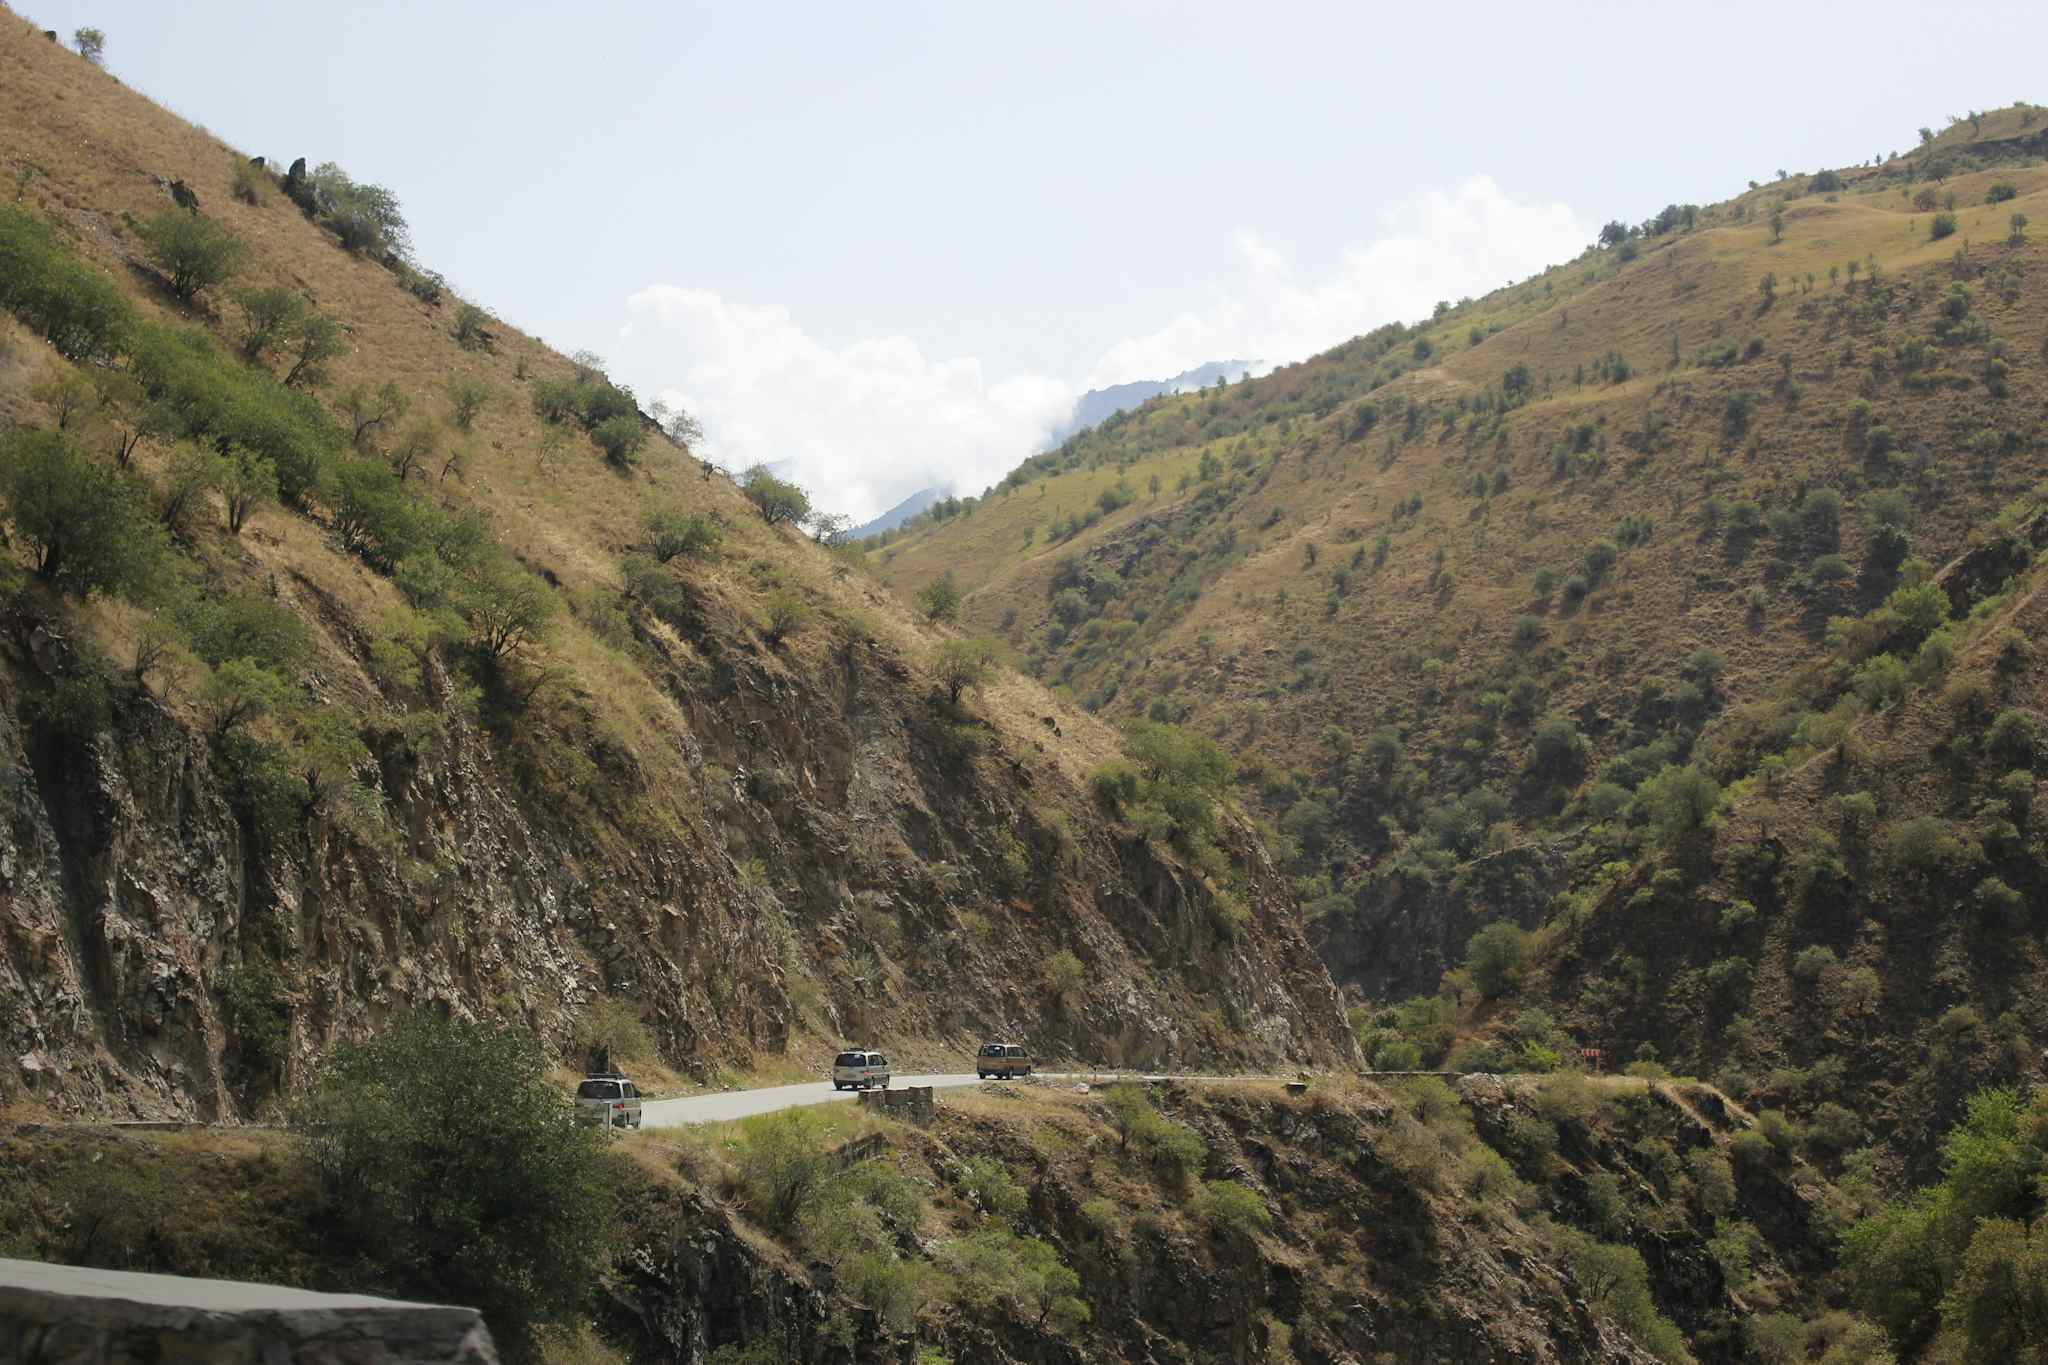 Tajikistan, Pamir road trip
Host image: Orom Travel